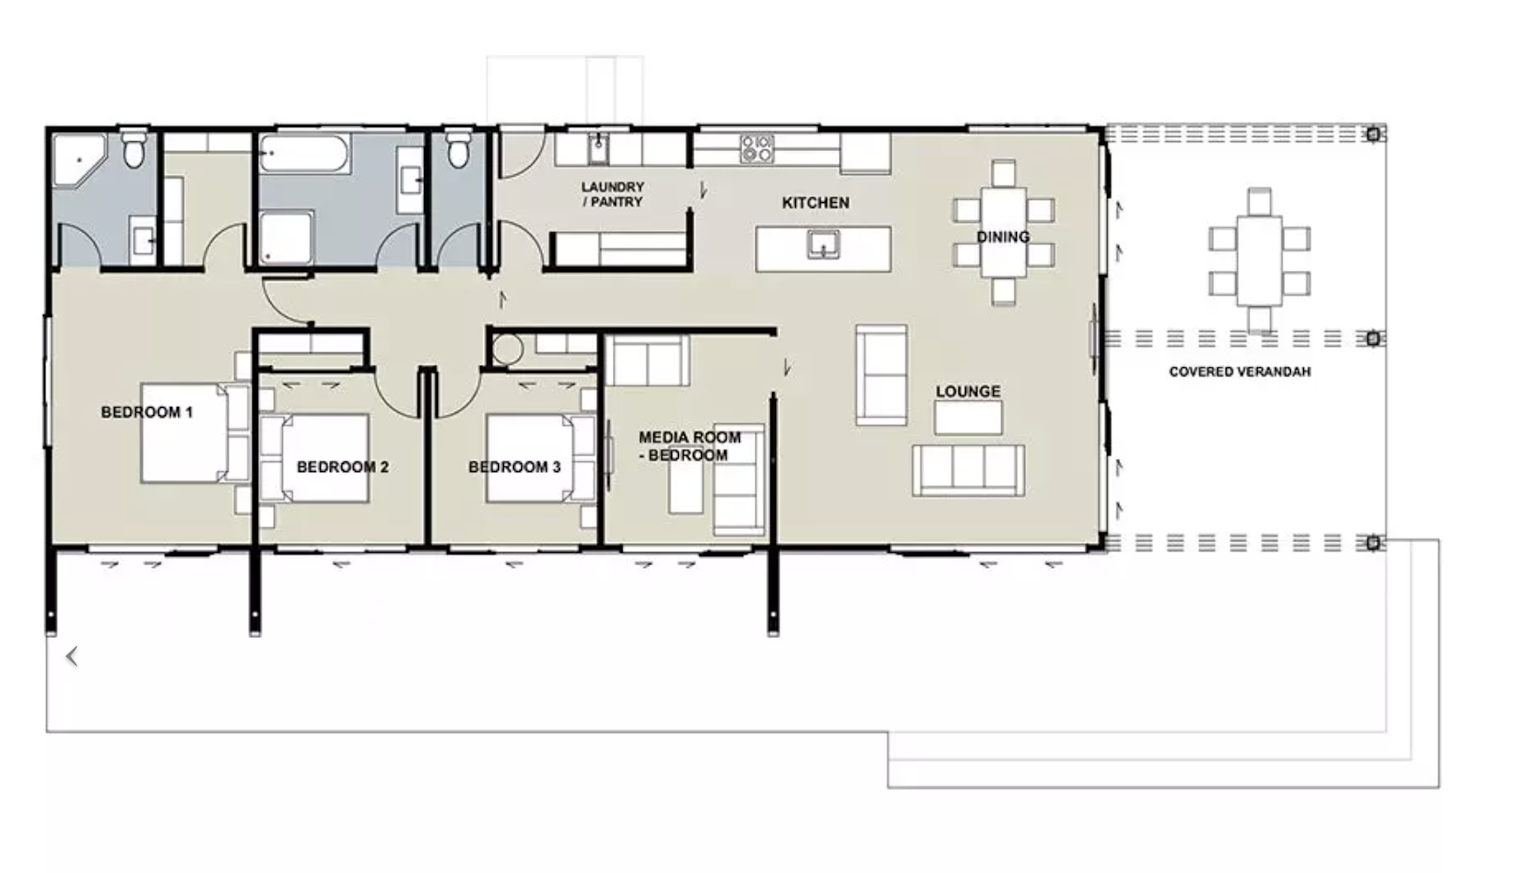 The Connolly floor plan